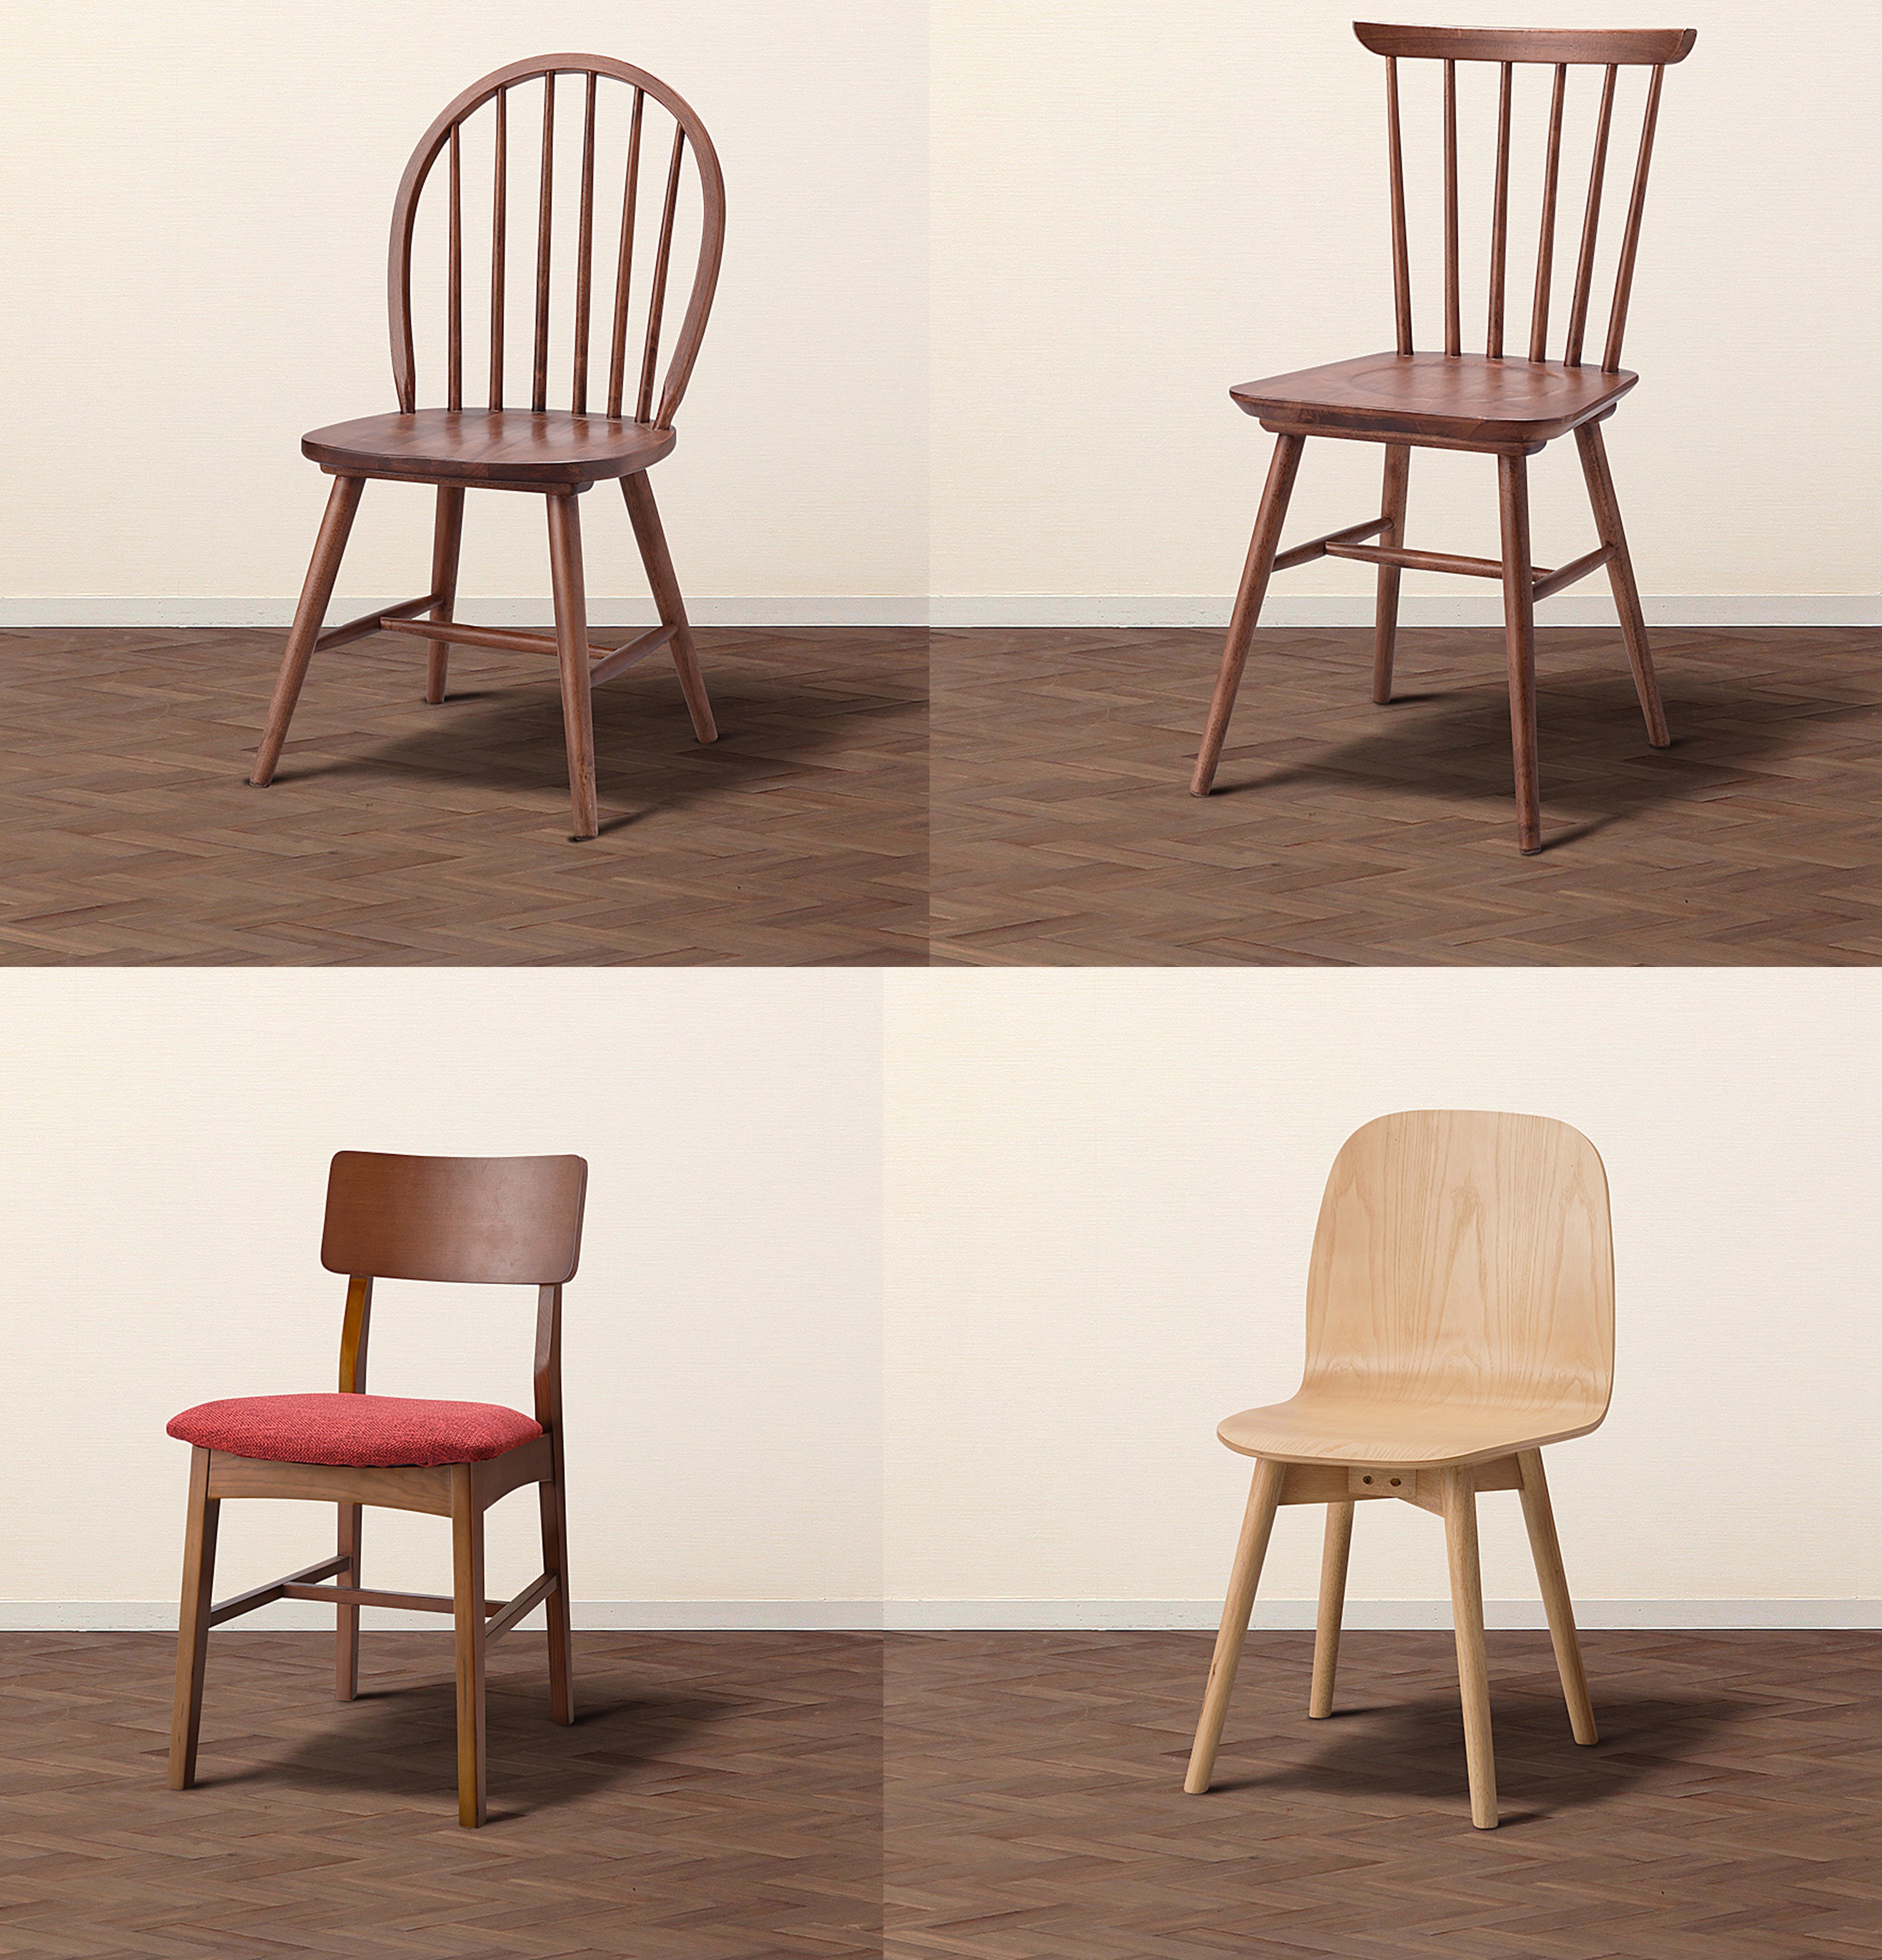 椅子的多视角表达图片图片